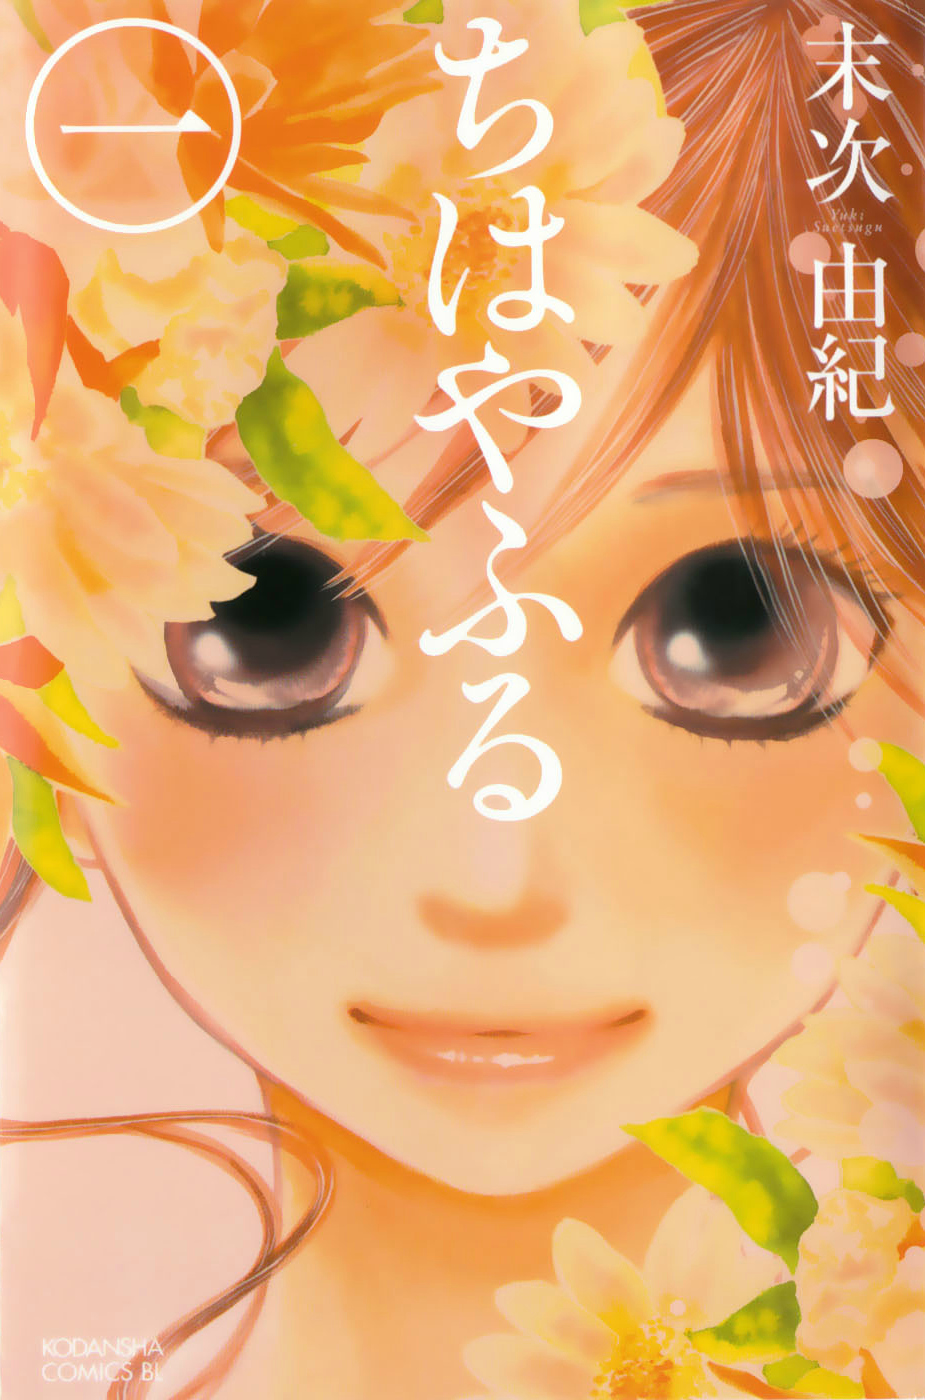 Chihayafuru manga cover volume 1